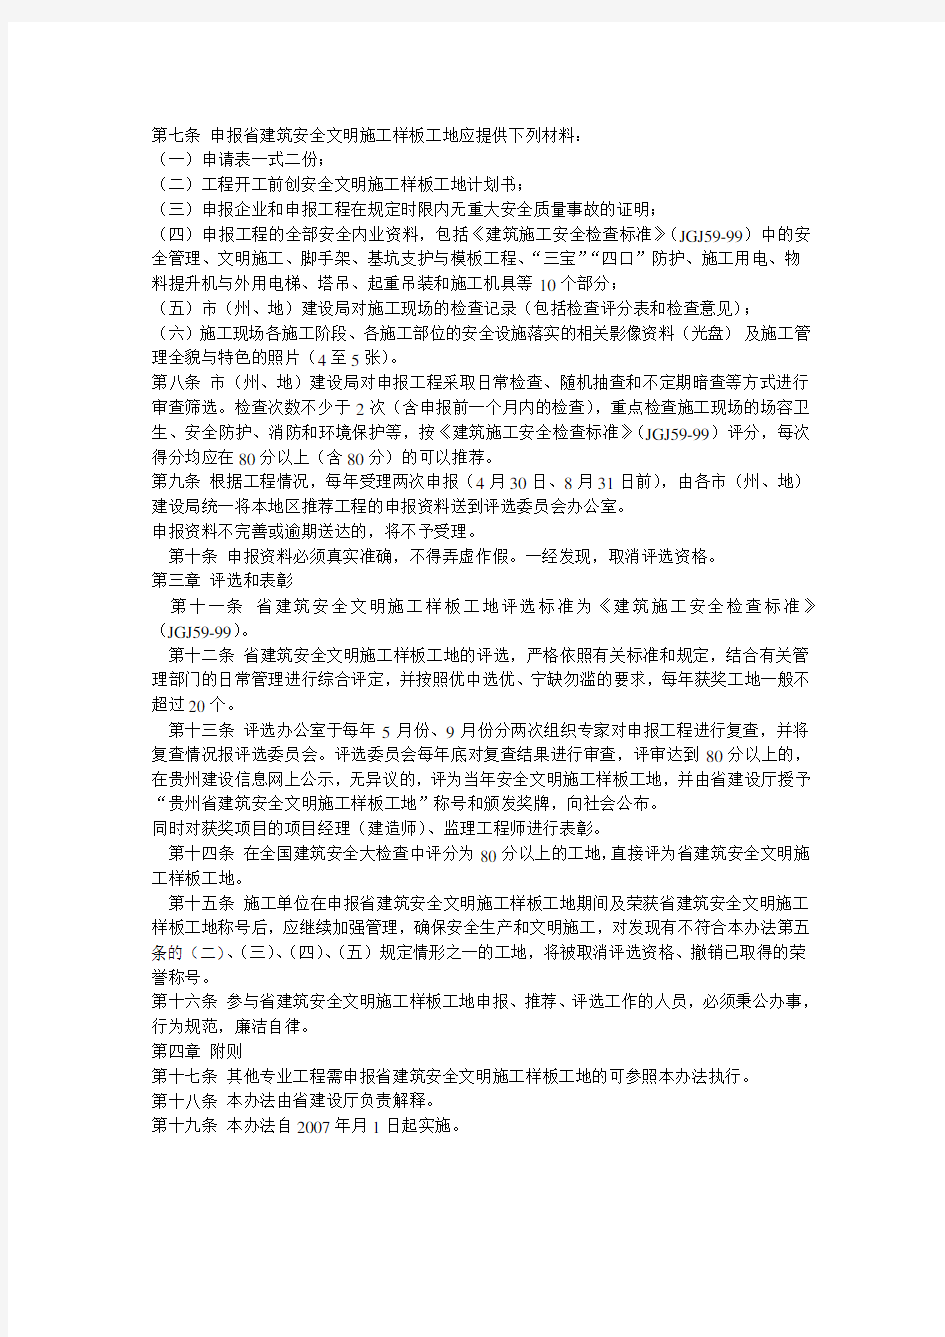 贵州省建筑 安全文明施工样板工地评选办法黔建施通2007(146)号